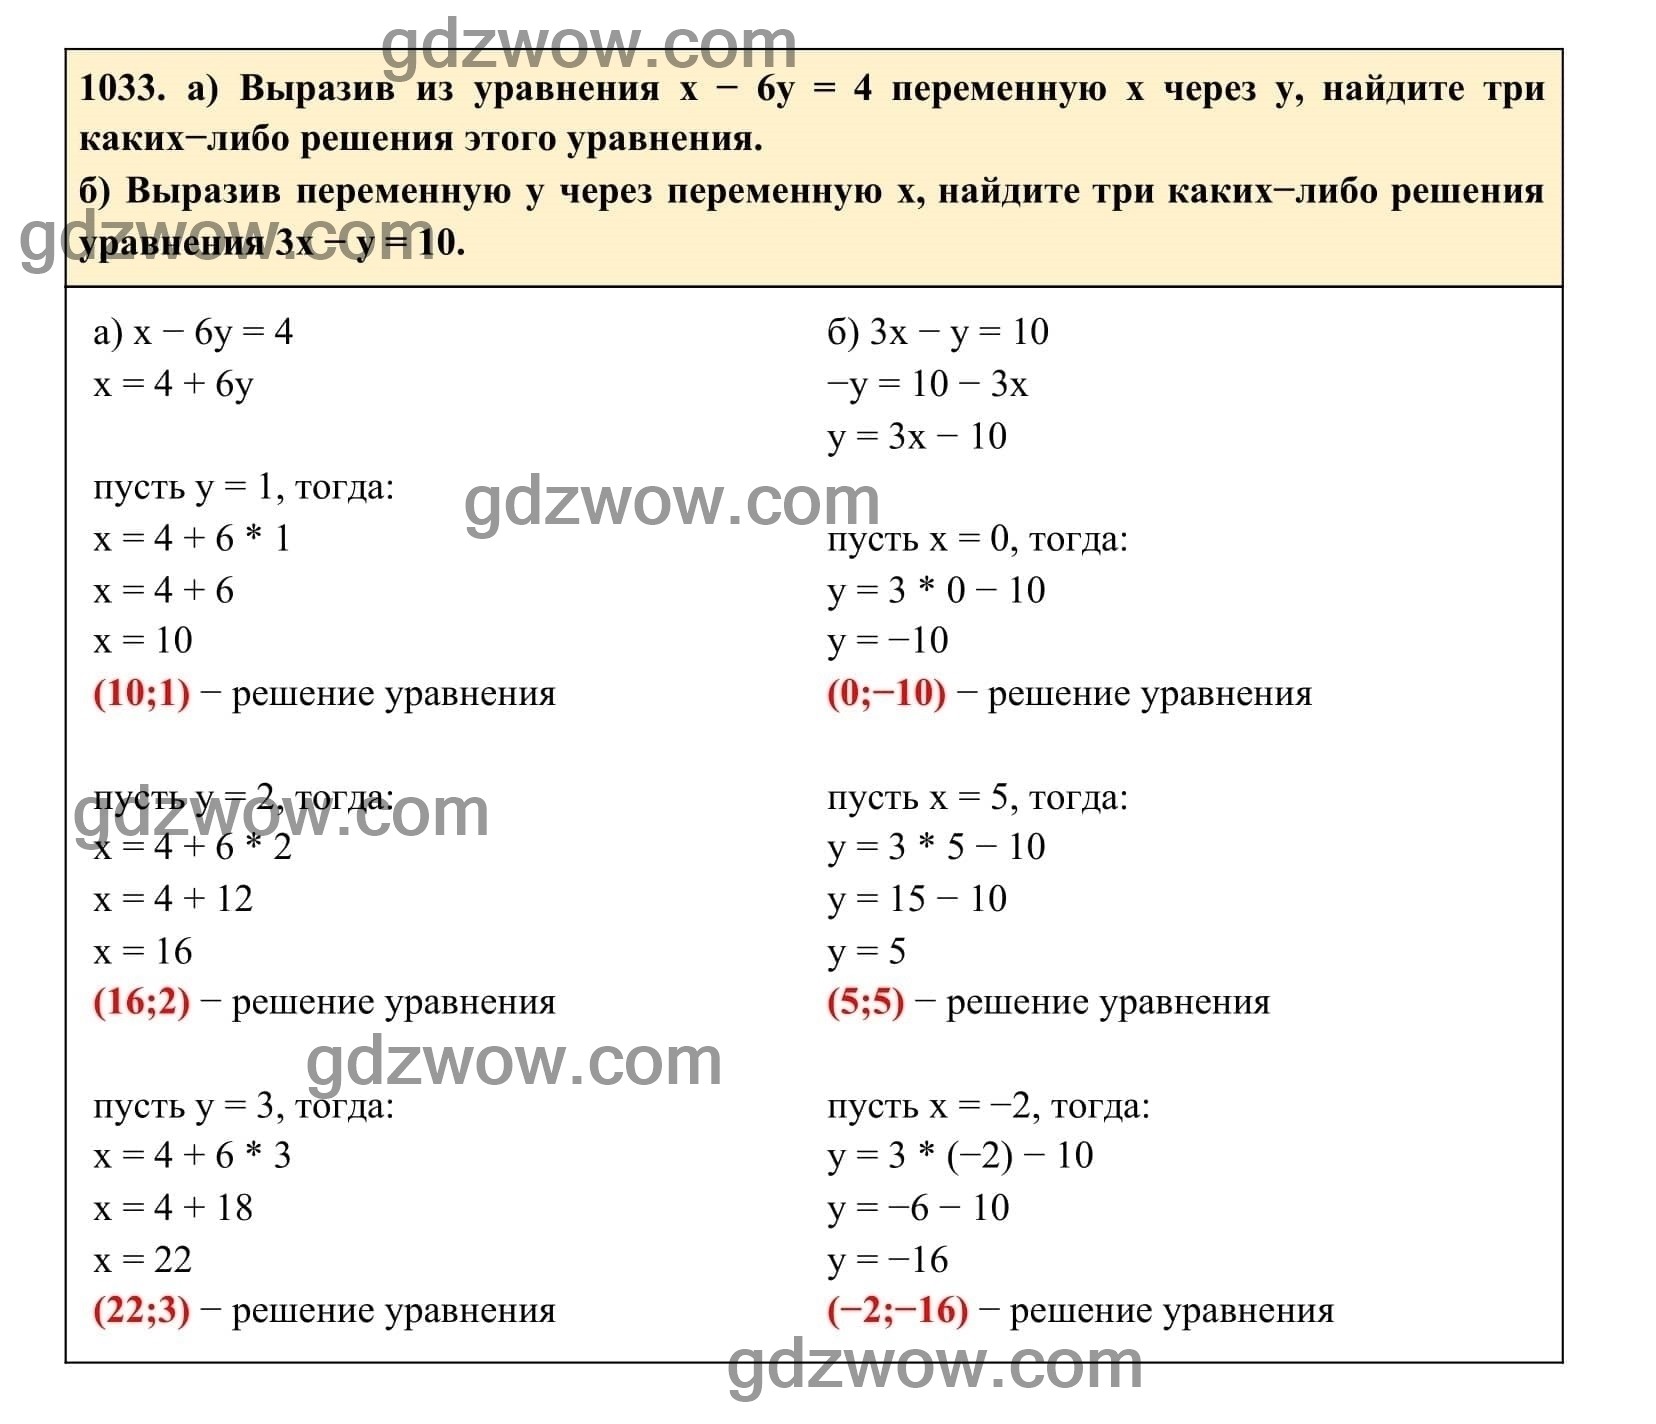 Упражнение 1033 - ГДЗ по Алгебре 7 класс Учебник Макарычев (решебник) - GDZwow